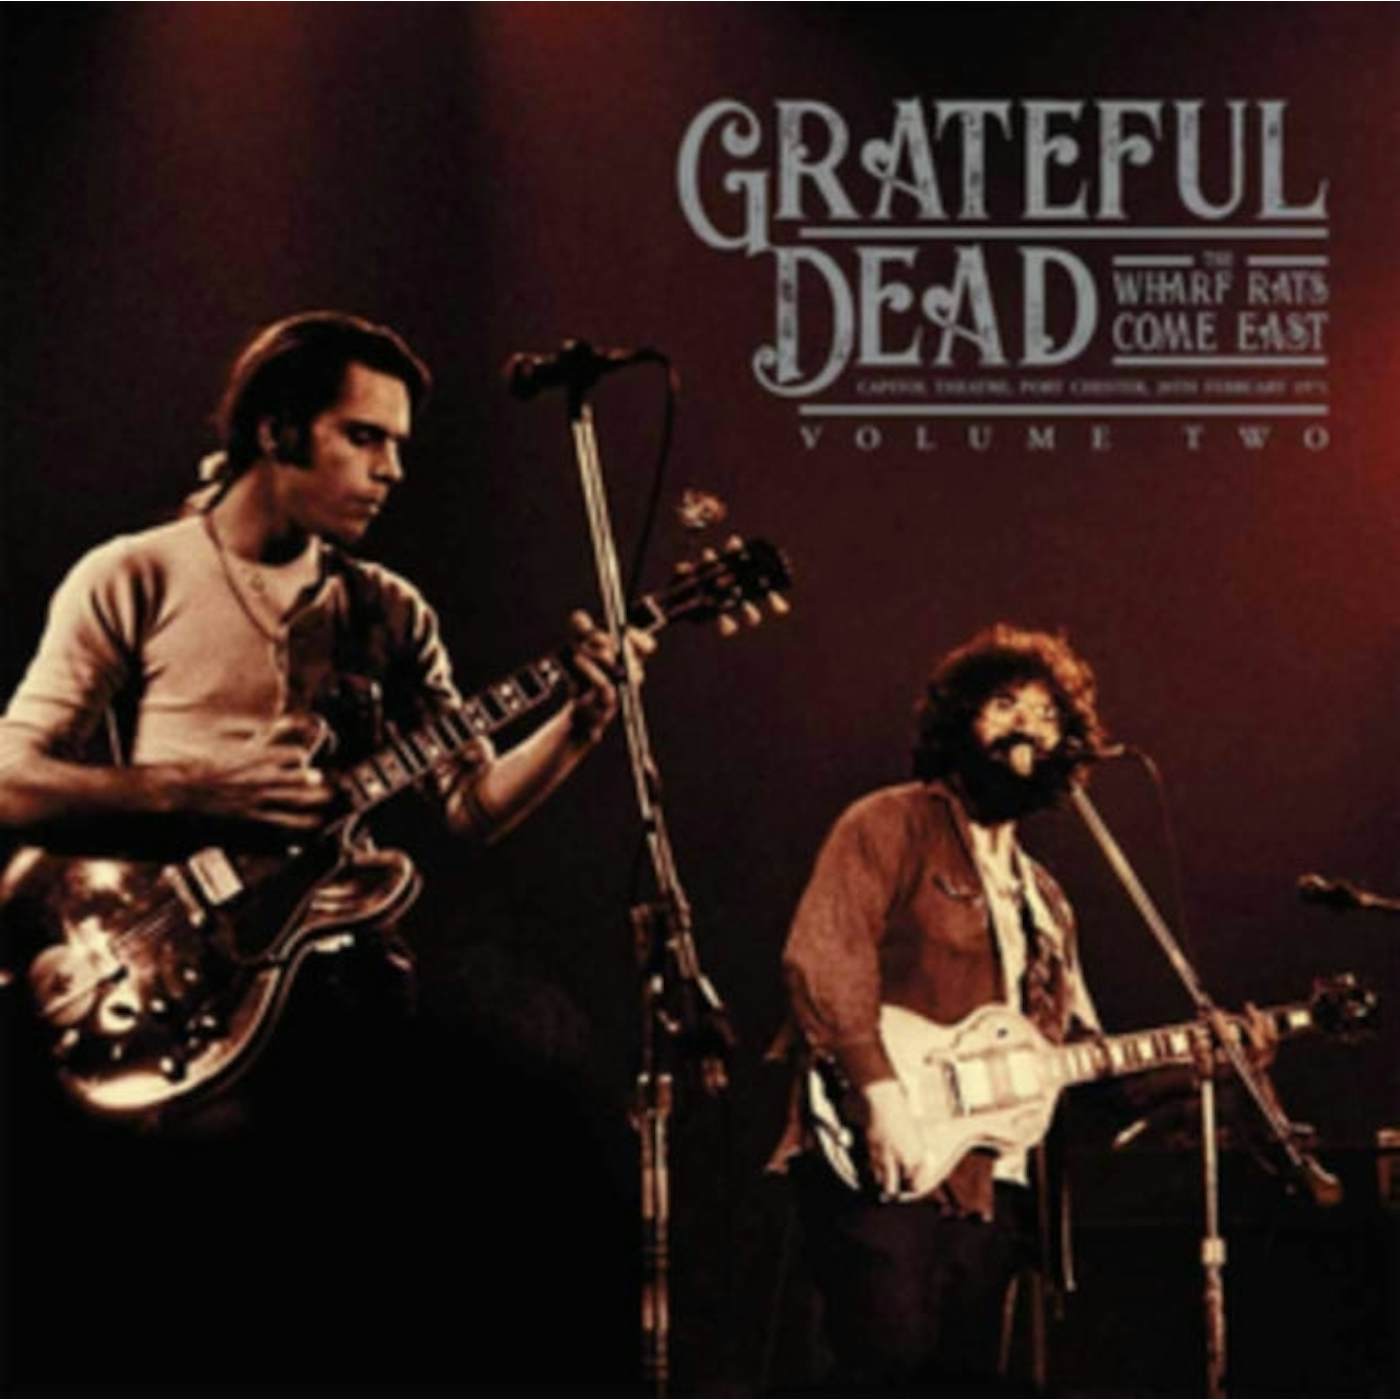 Grateful Dead LP - The Wharf Rats Come East  Vol.2 (Vinyl)